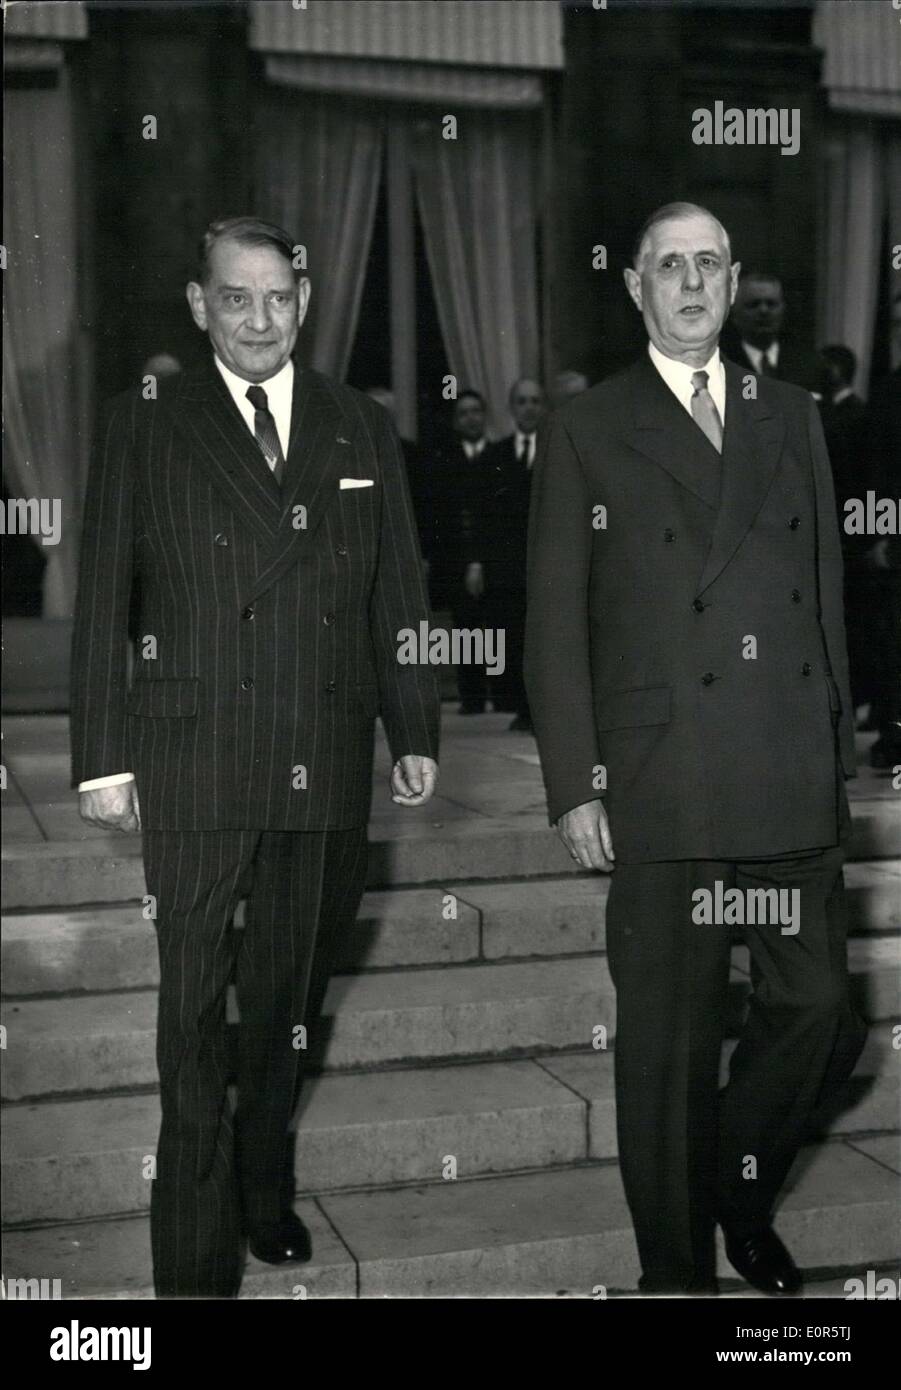 31 maggio 1958 - presidente Coty (sinistra) ha avuto un nuovo incontro con il generale de Gaulle all'Elysee Palace per mostrare numerosi contatti con diverse personalità provenienti da diversi gruppi. Foto Stock